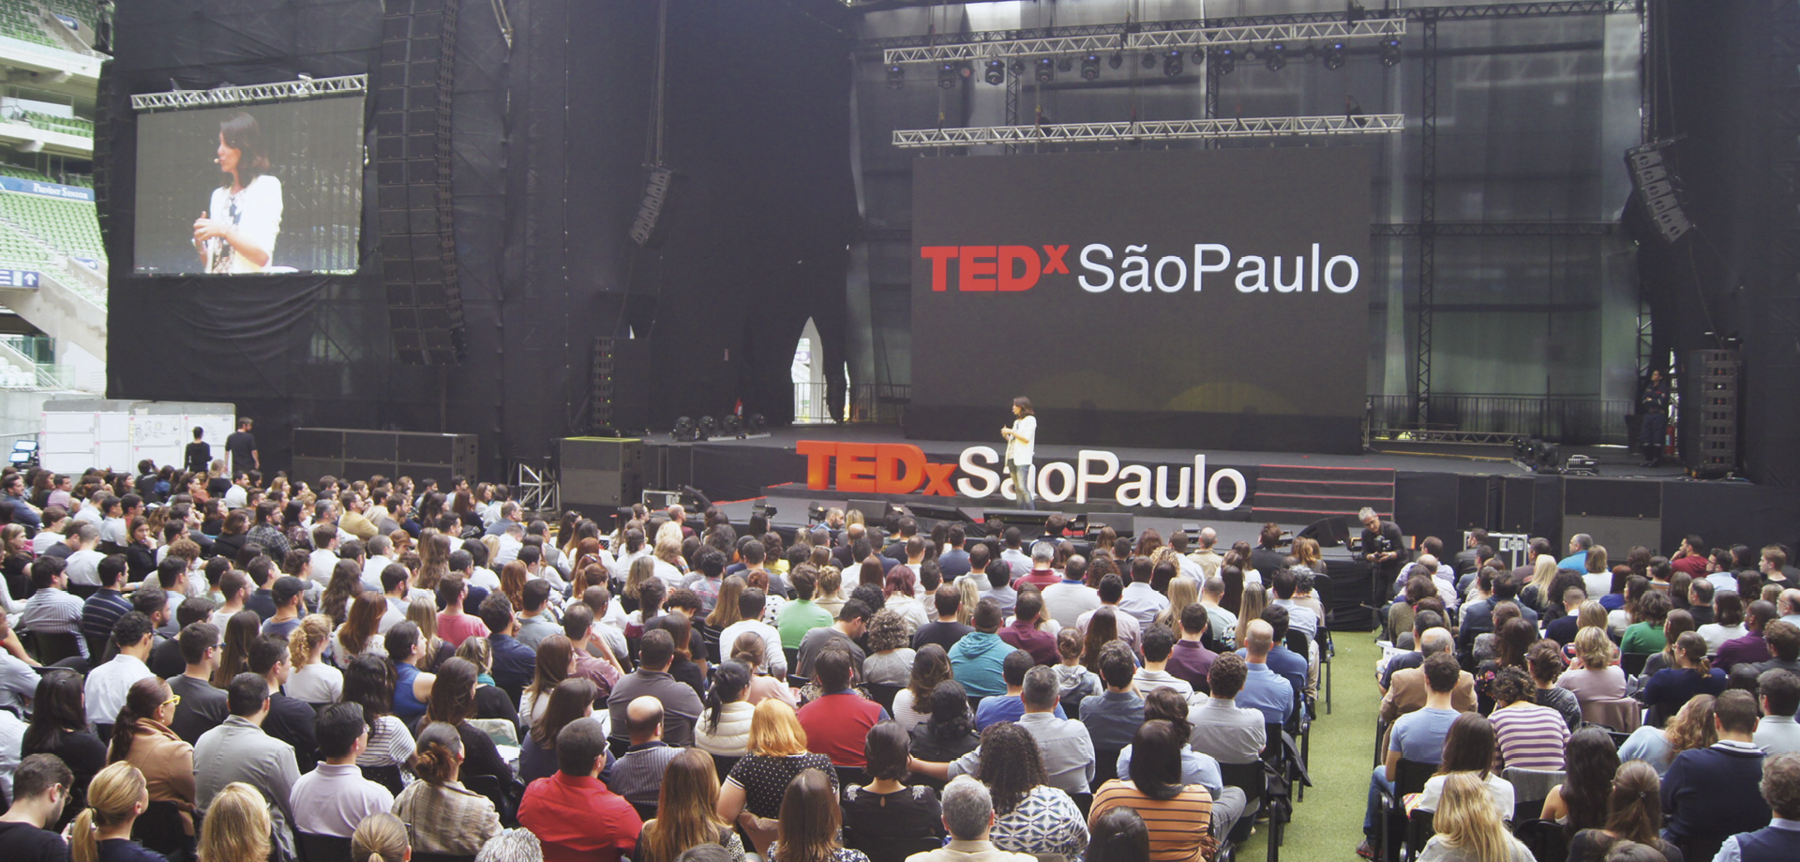 Fotografia. Retrato da apresentação de uma palestra no centro do palco de um auditório. A palestrante está em pé, mas a distância não possibilita perceber outros detalhes dela, pois a imagem enfatiza a plateia, praticamente lotada que está diante dela: inúmeras pessoas sentadas, de costas. No palco, atrás da palestrante, há grandes letras tridimensionais formando o título do evento e o local: 'TEDx' em vermelho, e 'São Paulo', em branco. Ao fundo, uma tela cinza-escura, na qual são projetadas estas mesmas palavras, e ao lado, uma outra tela exibindo a palestrante en close.